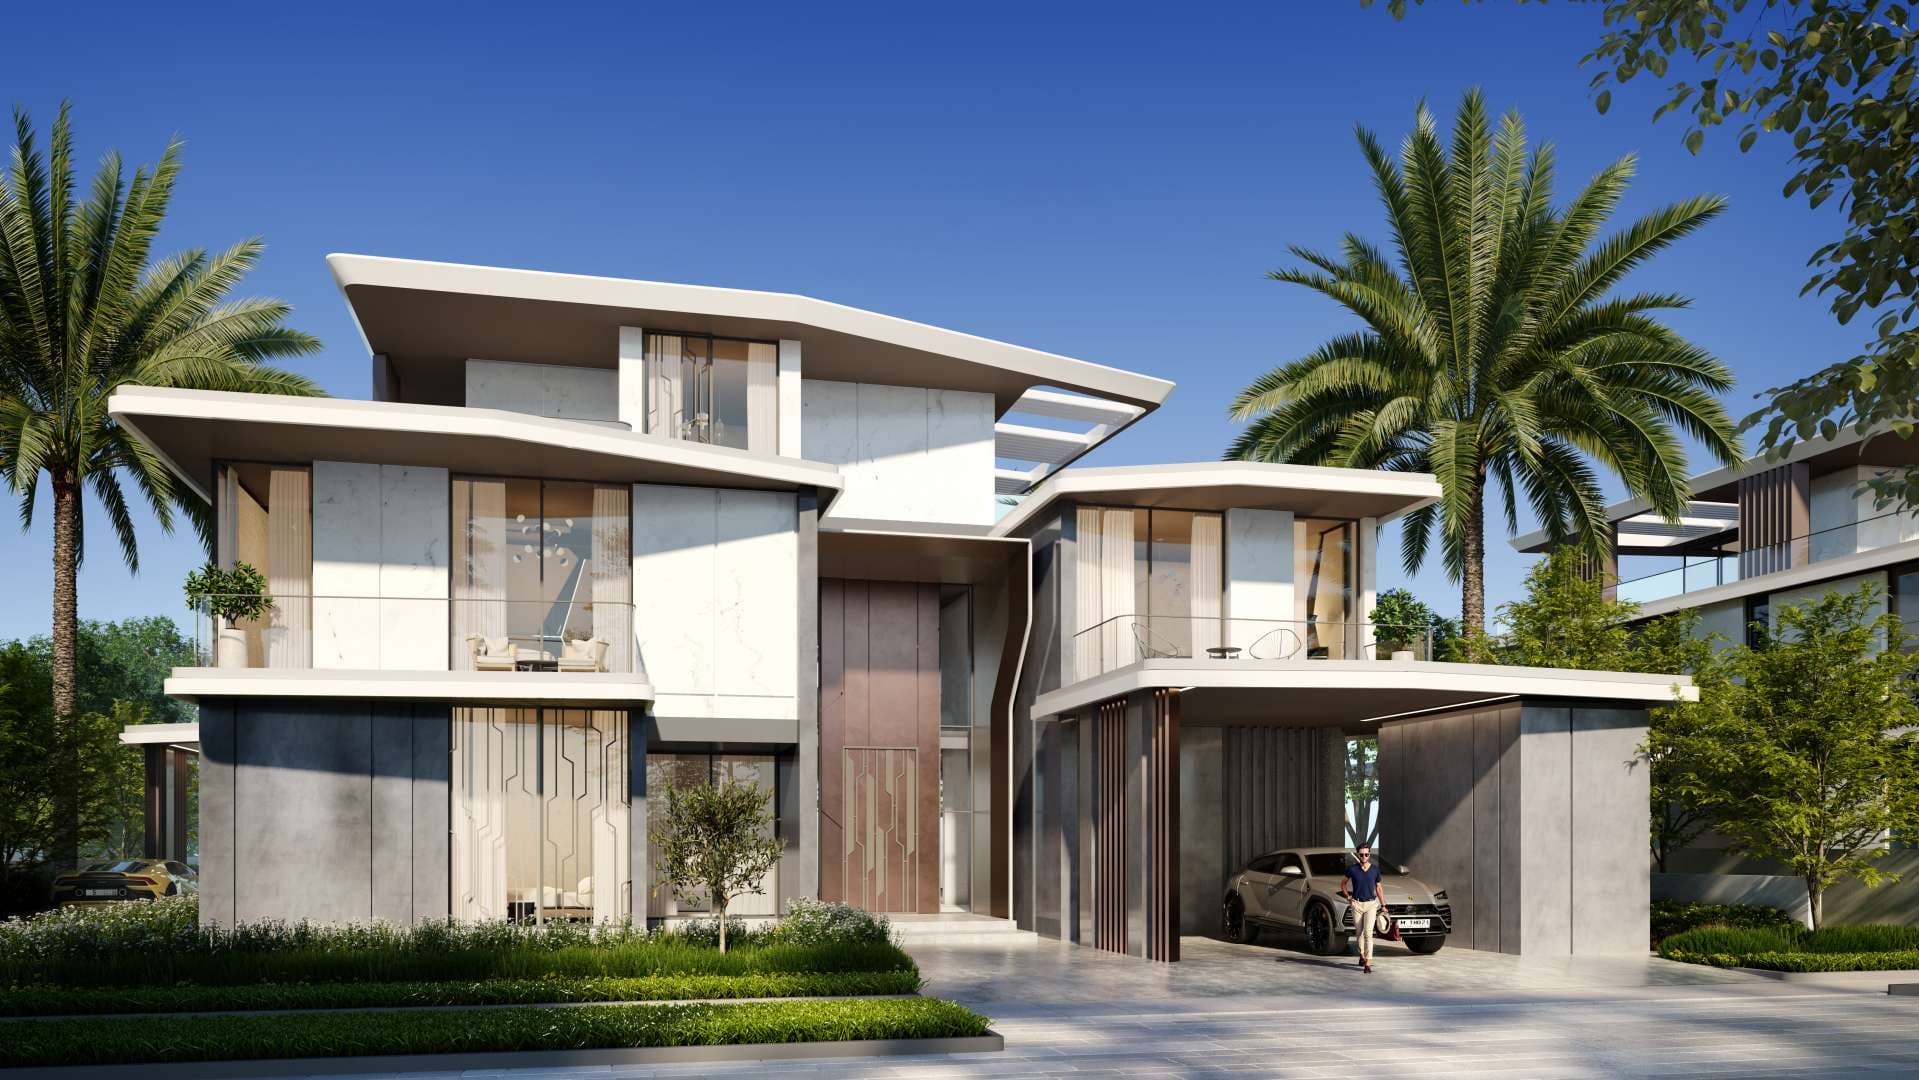 6 Bedroom Villa For Sale Dubai Hills Vista Lp07560 2001e22bfa6ccc00.jpg